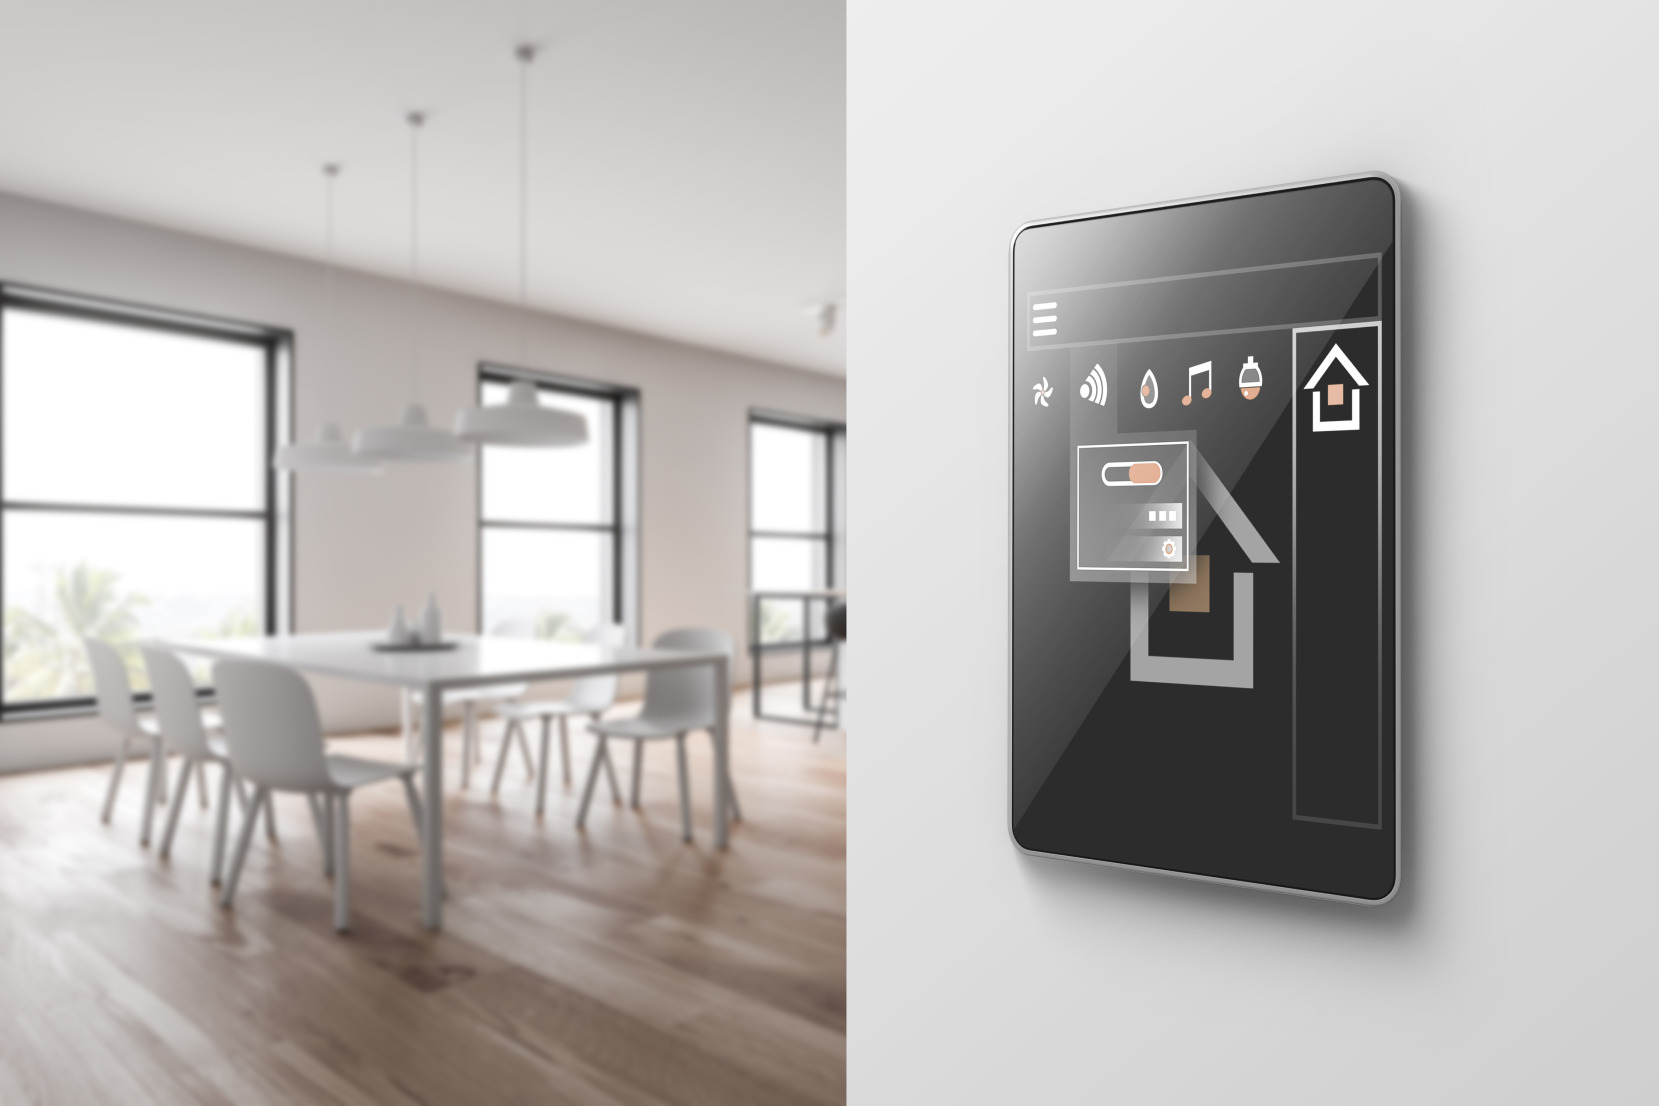 Gros plan sur un système de maison intelligente qui contrôle les lumières, la température, les alarmes et bien plus dans une maison neuve.